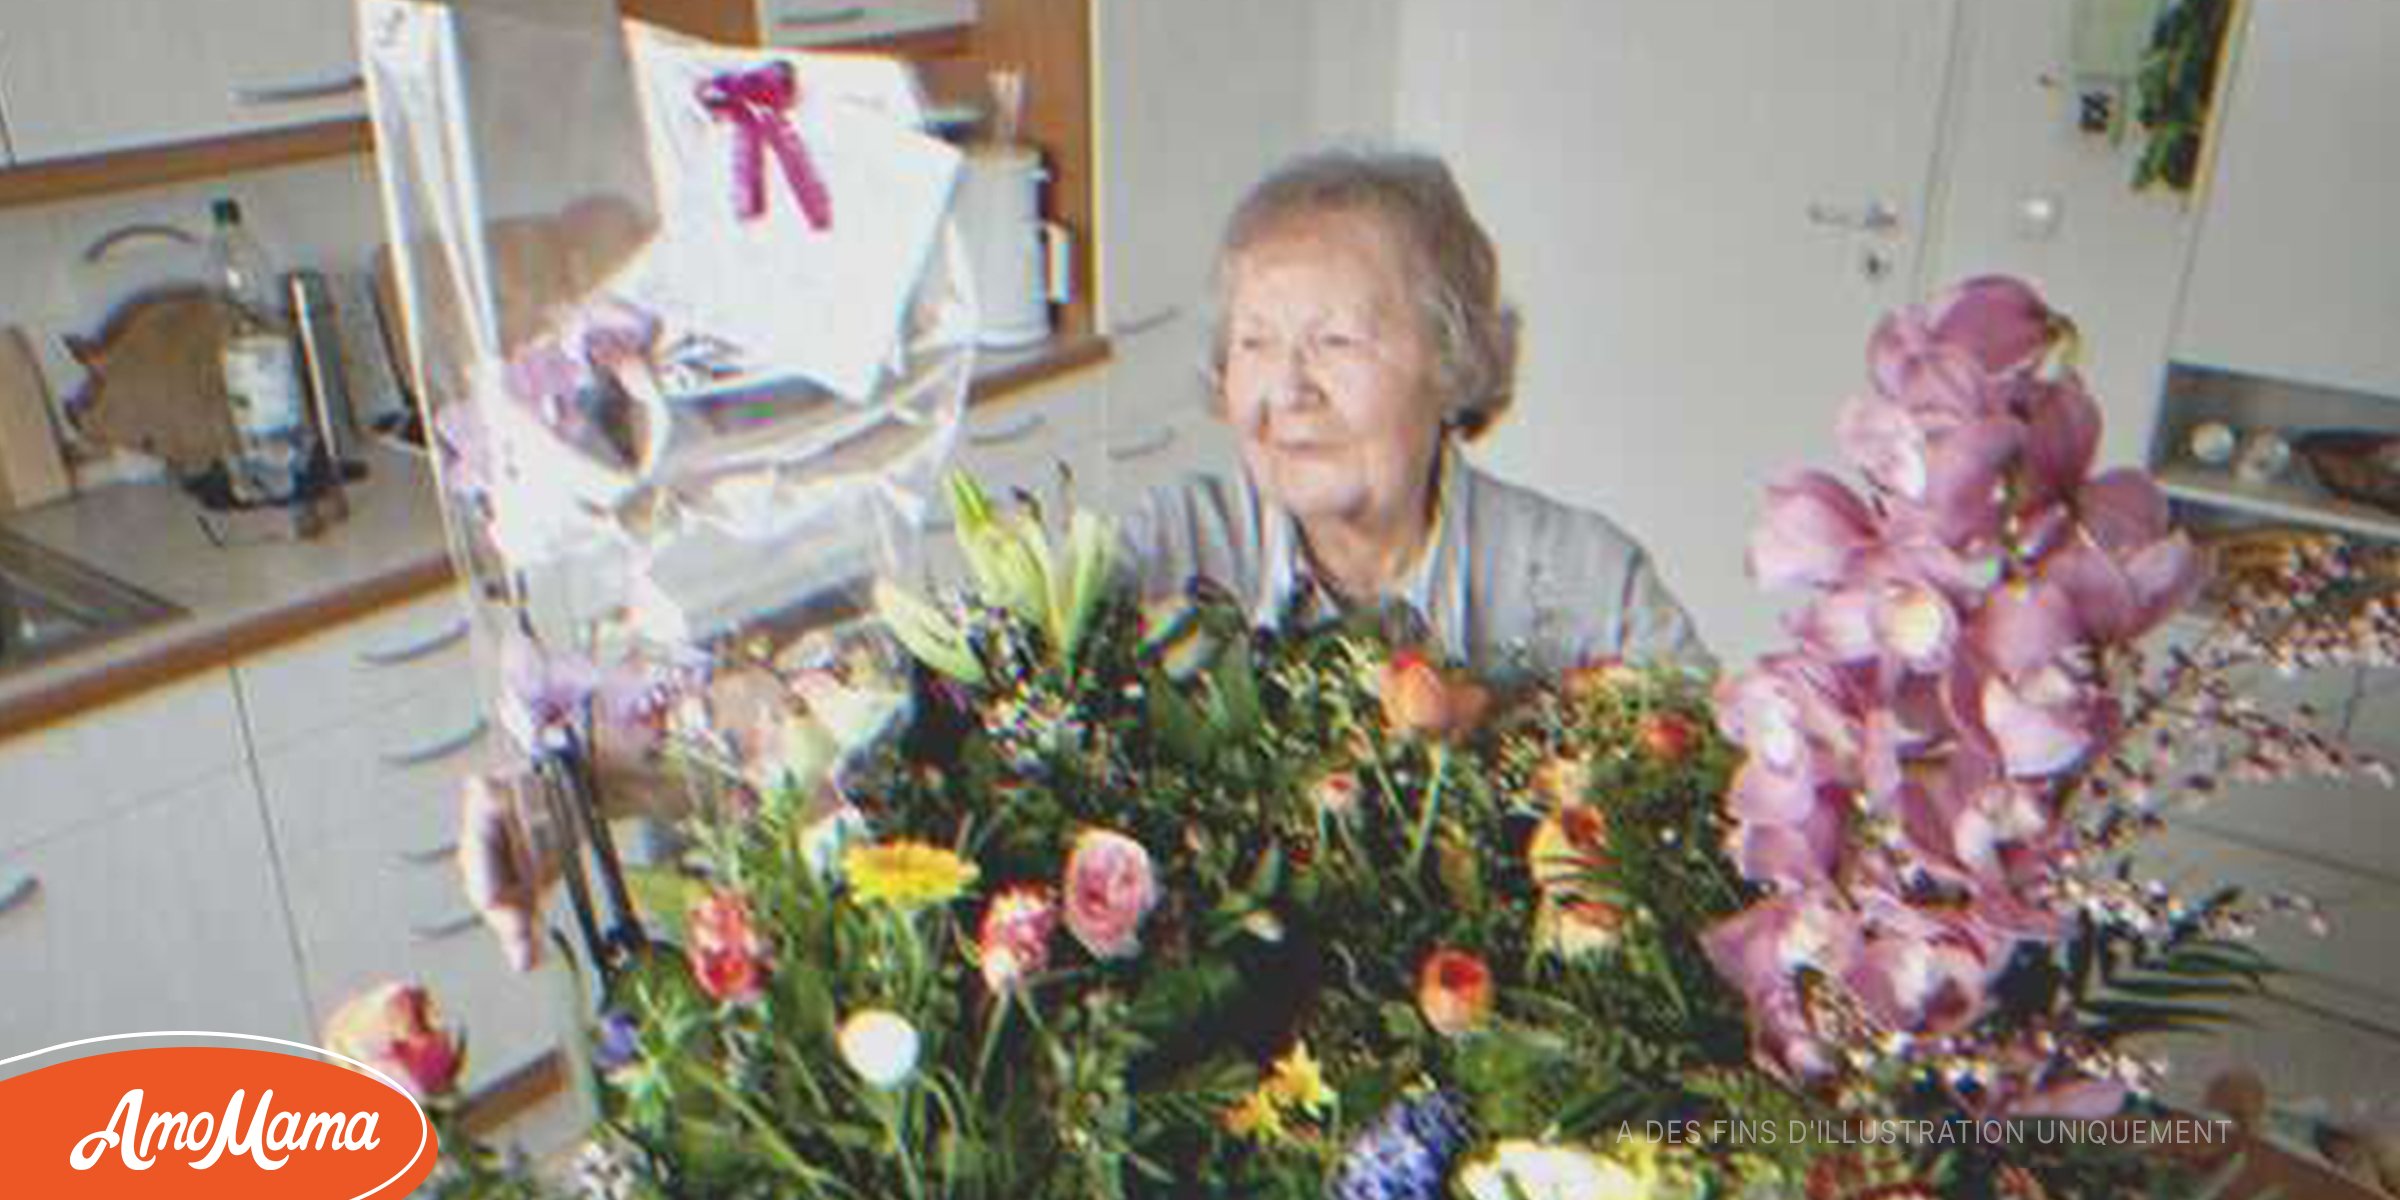 Un garçon de 14 ans dépense son premier salaire pour offrir des fleurs à sa grand-mère après que son grand-père l’a laissée seule – Histoire du jour